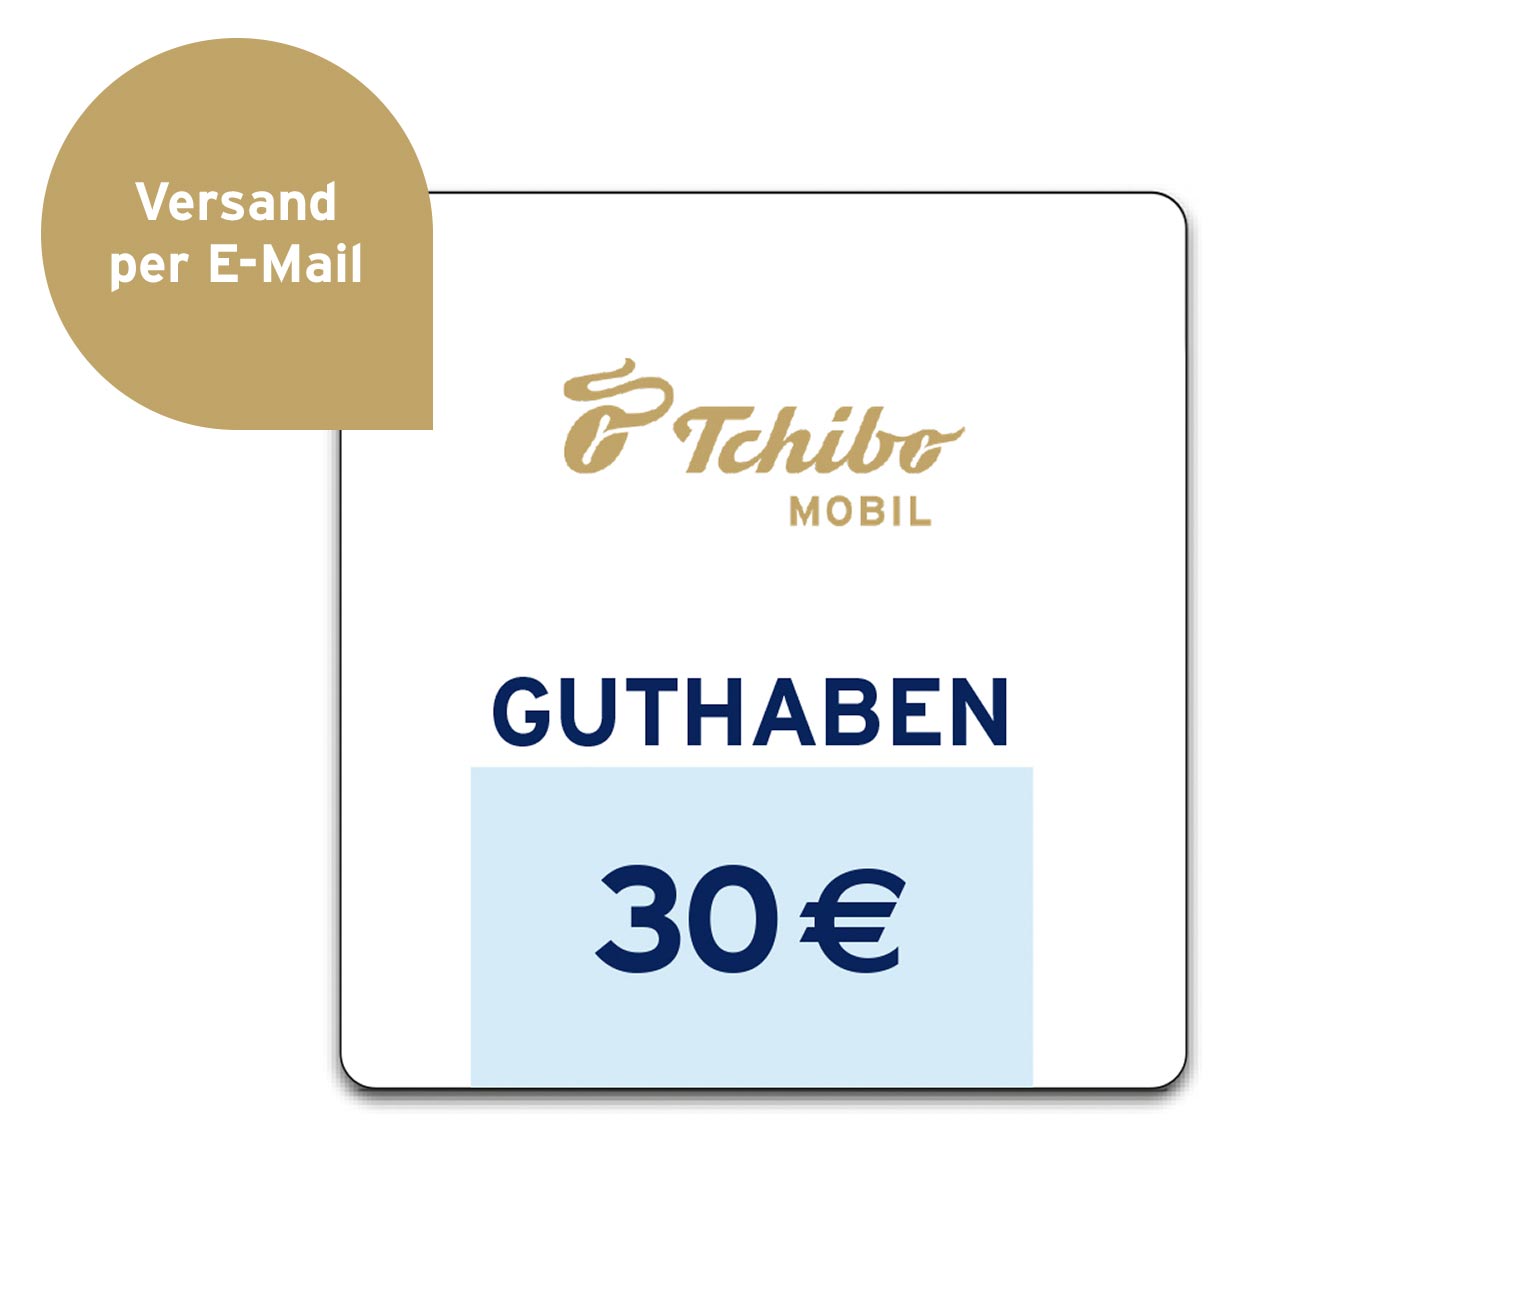 Guthaben-Voucher 10 EUR online bestellen bei Tchibo 521928